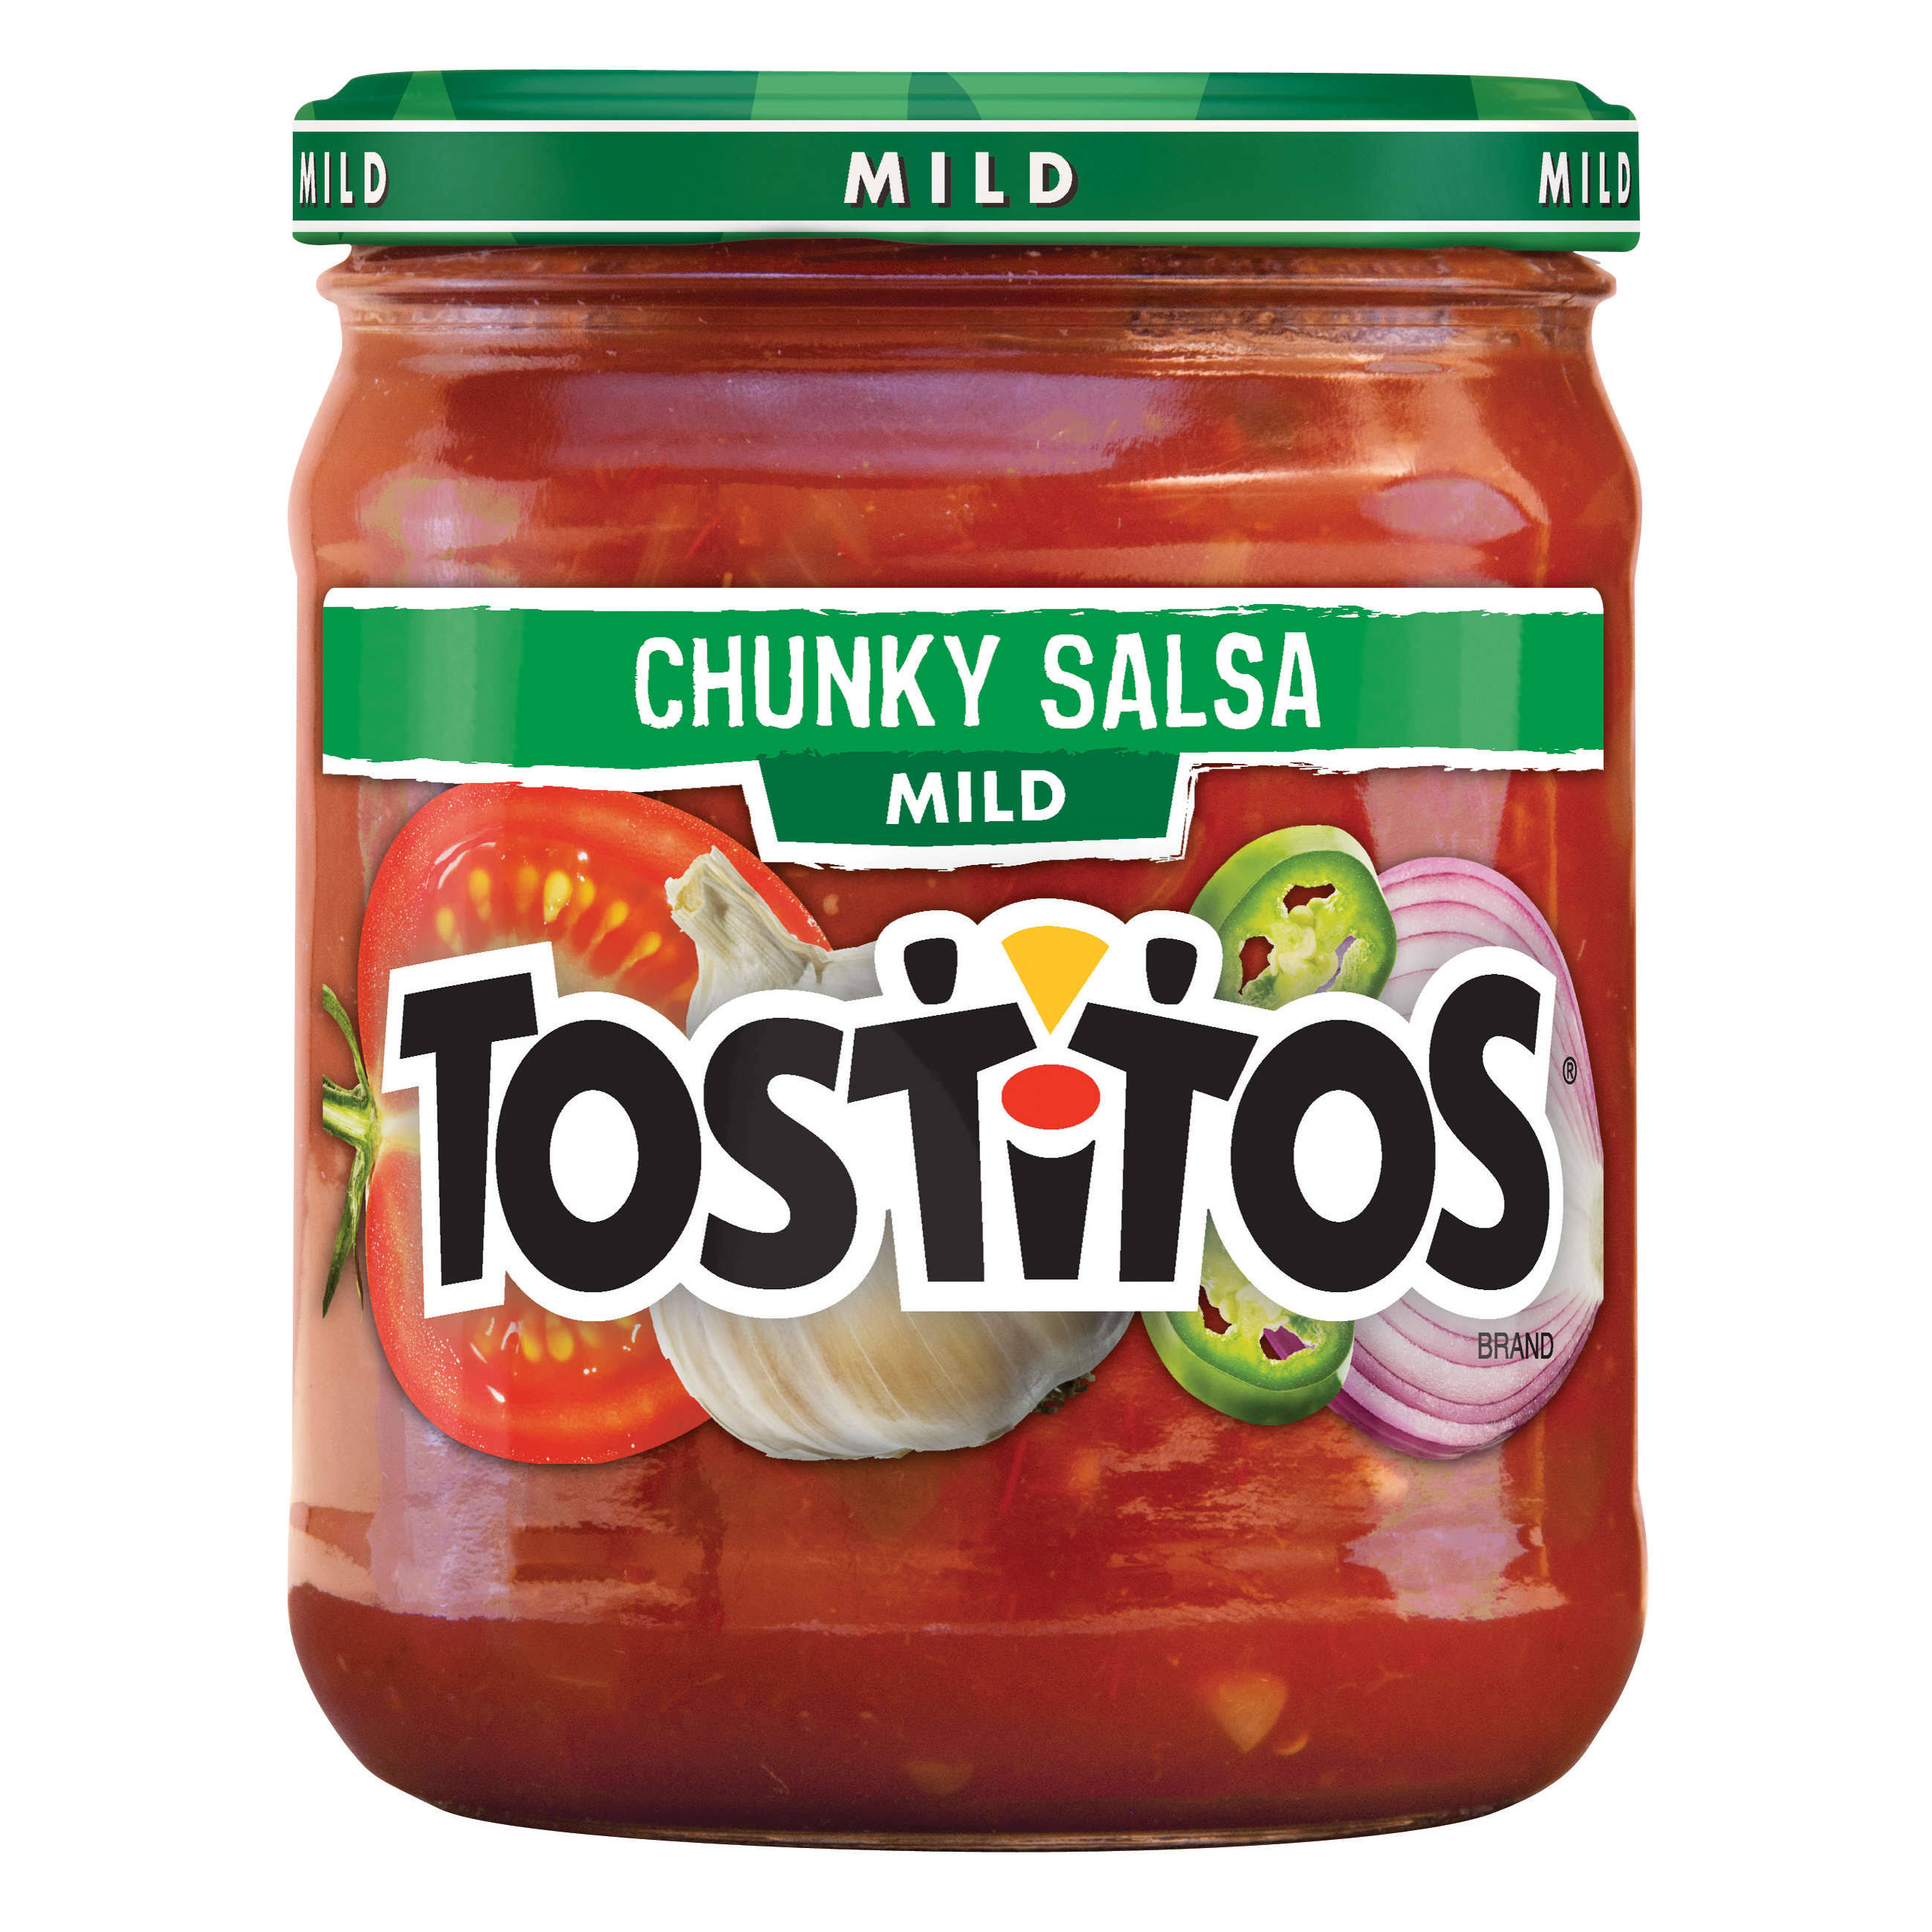 Tostitos, Mild Chunky Salsa, 15.5oz Glass Jar (Pack of 4)